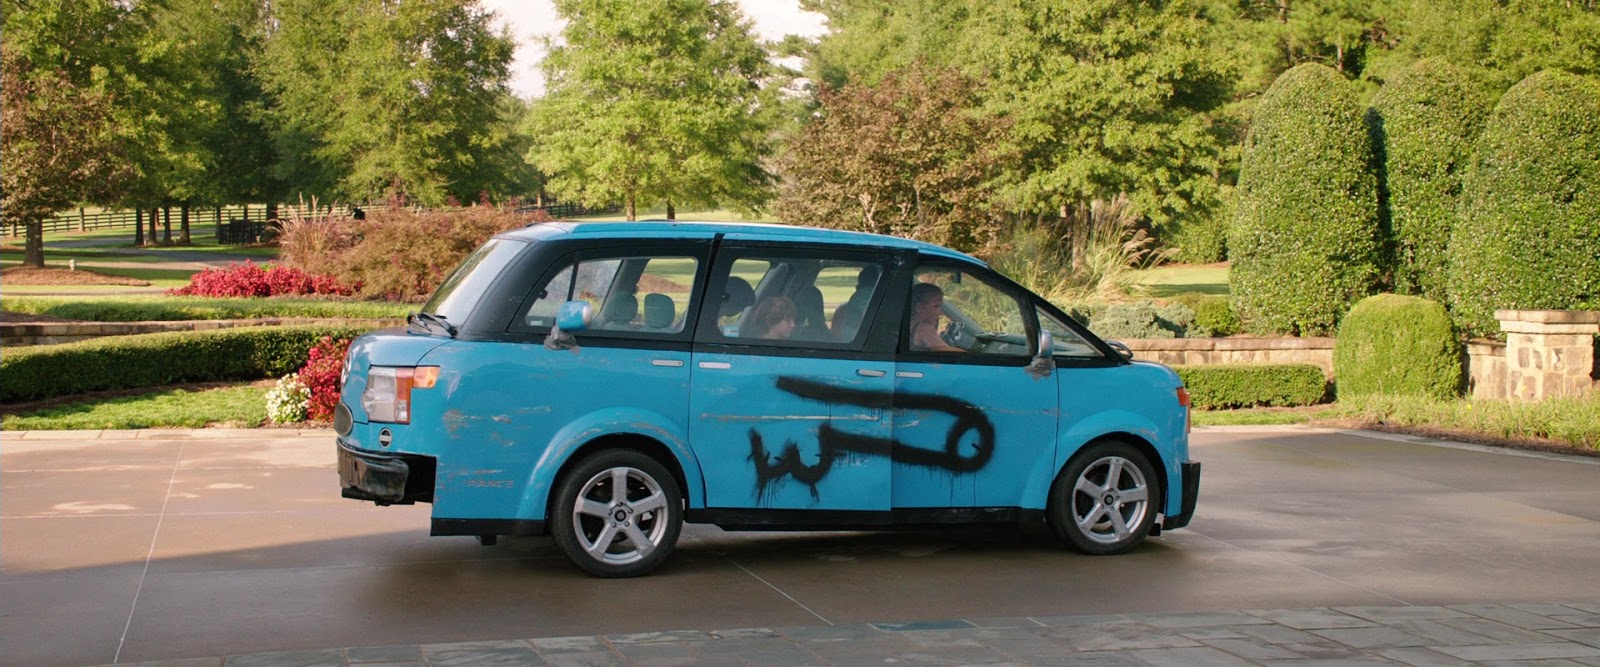 Забавное винтажное порно на голубом автомобиле-пикапе.